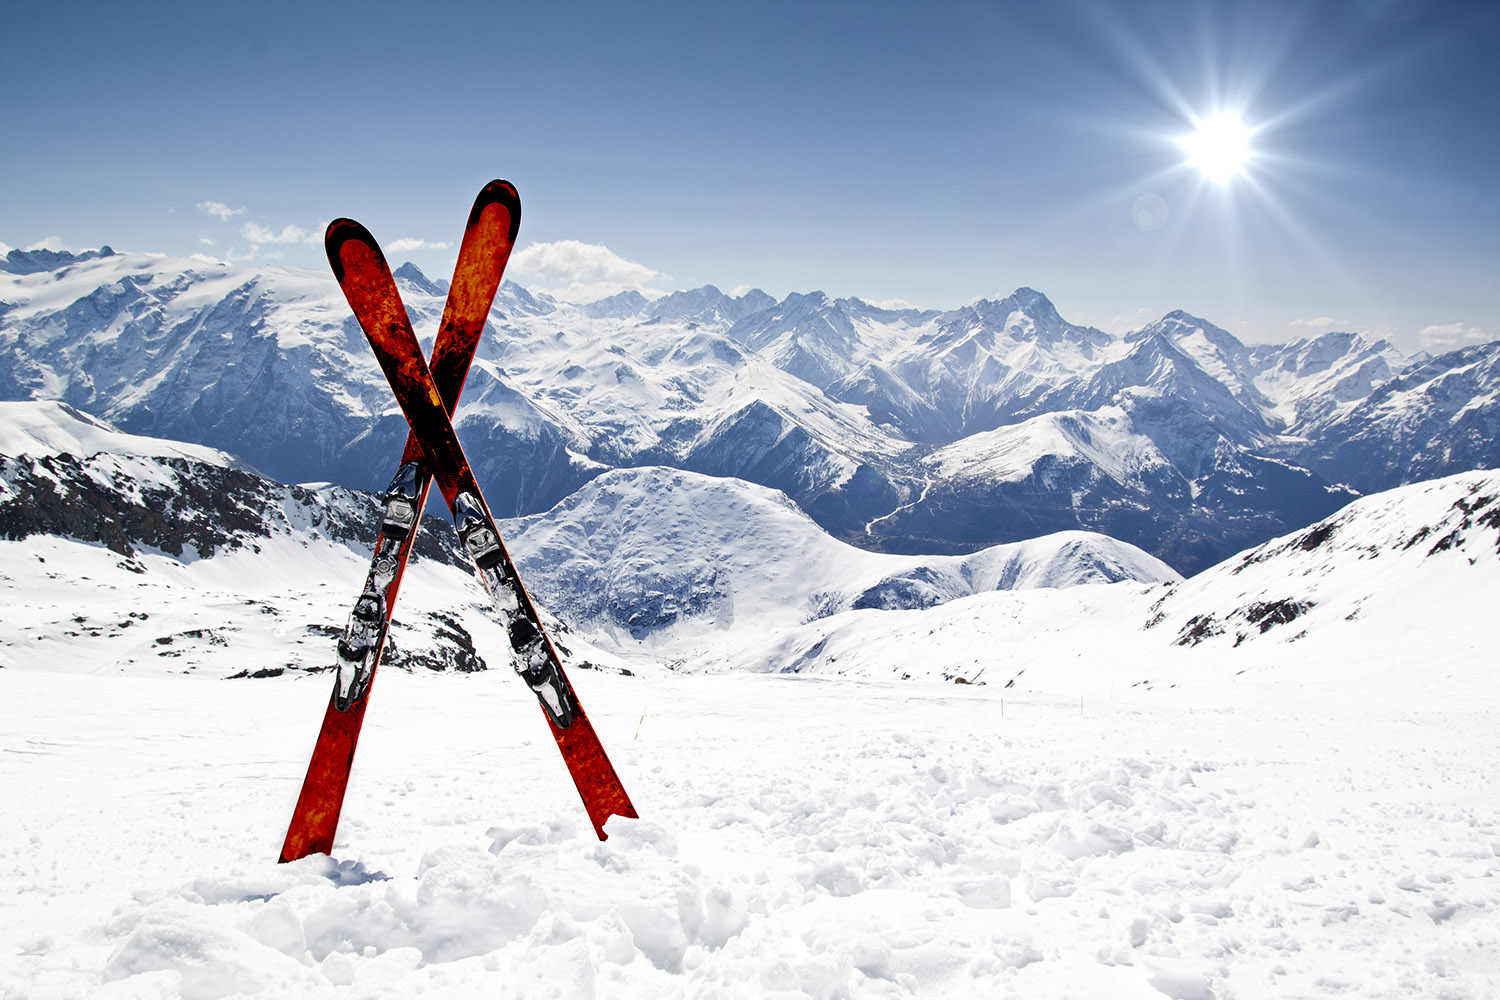 Heli Skiing Information (Gear List)